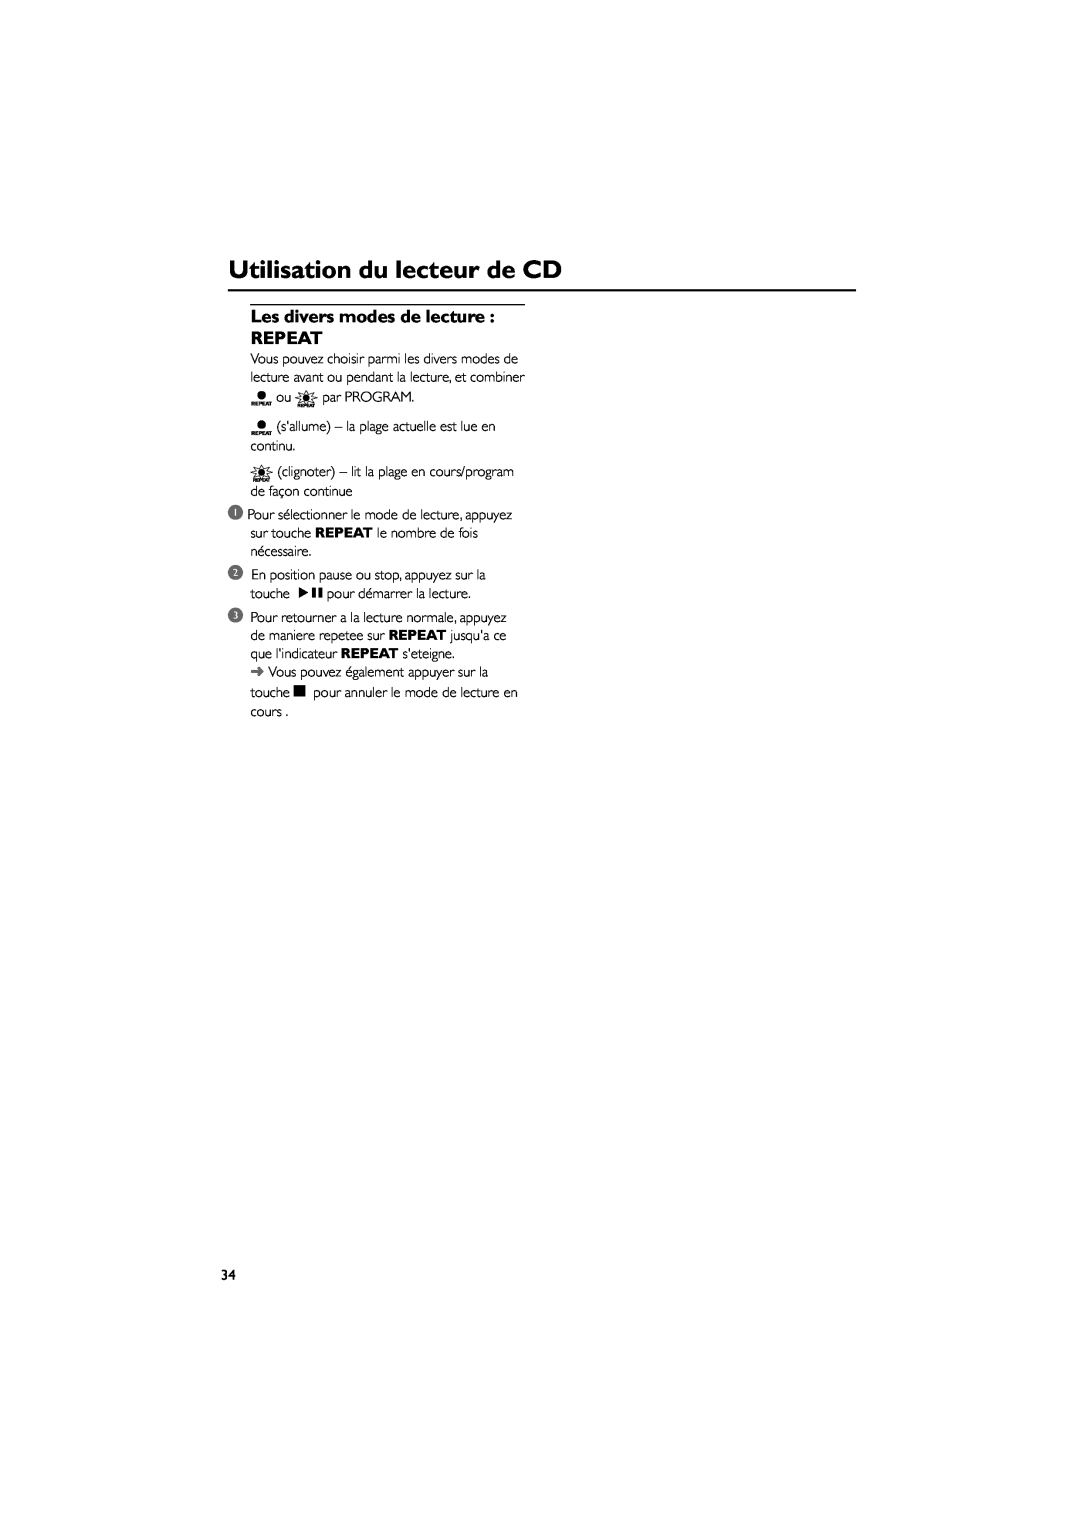 Magnavox MAS85 owner manual Utilisation du lecteur de CD, Les divers modes de lecture REPEAT 